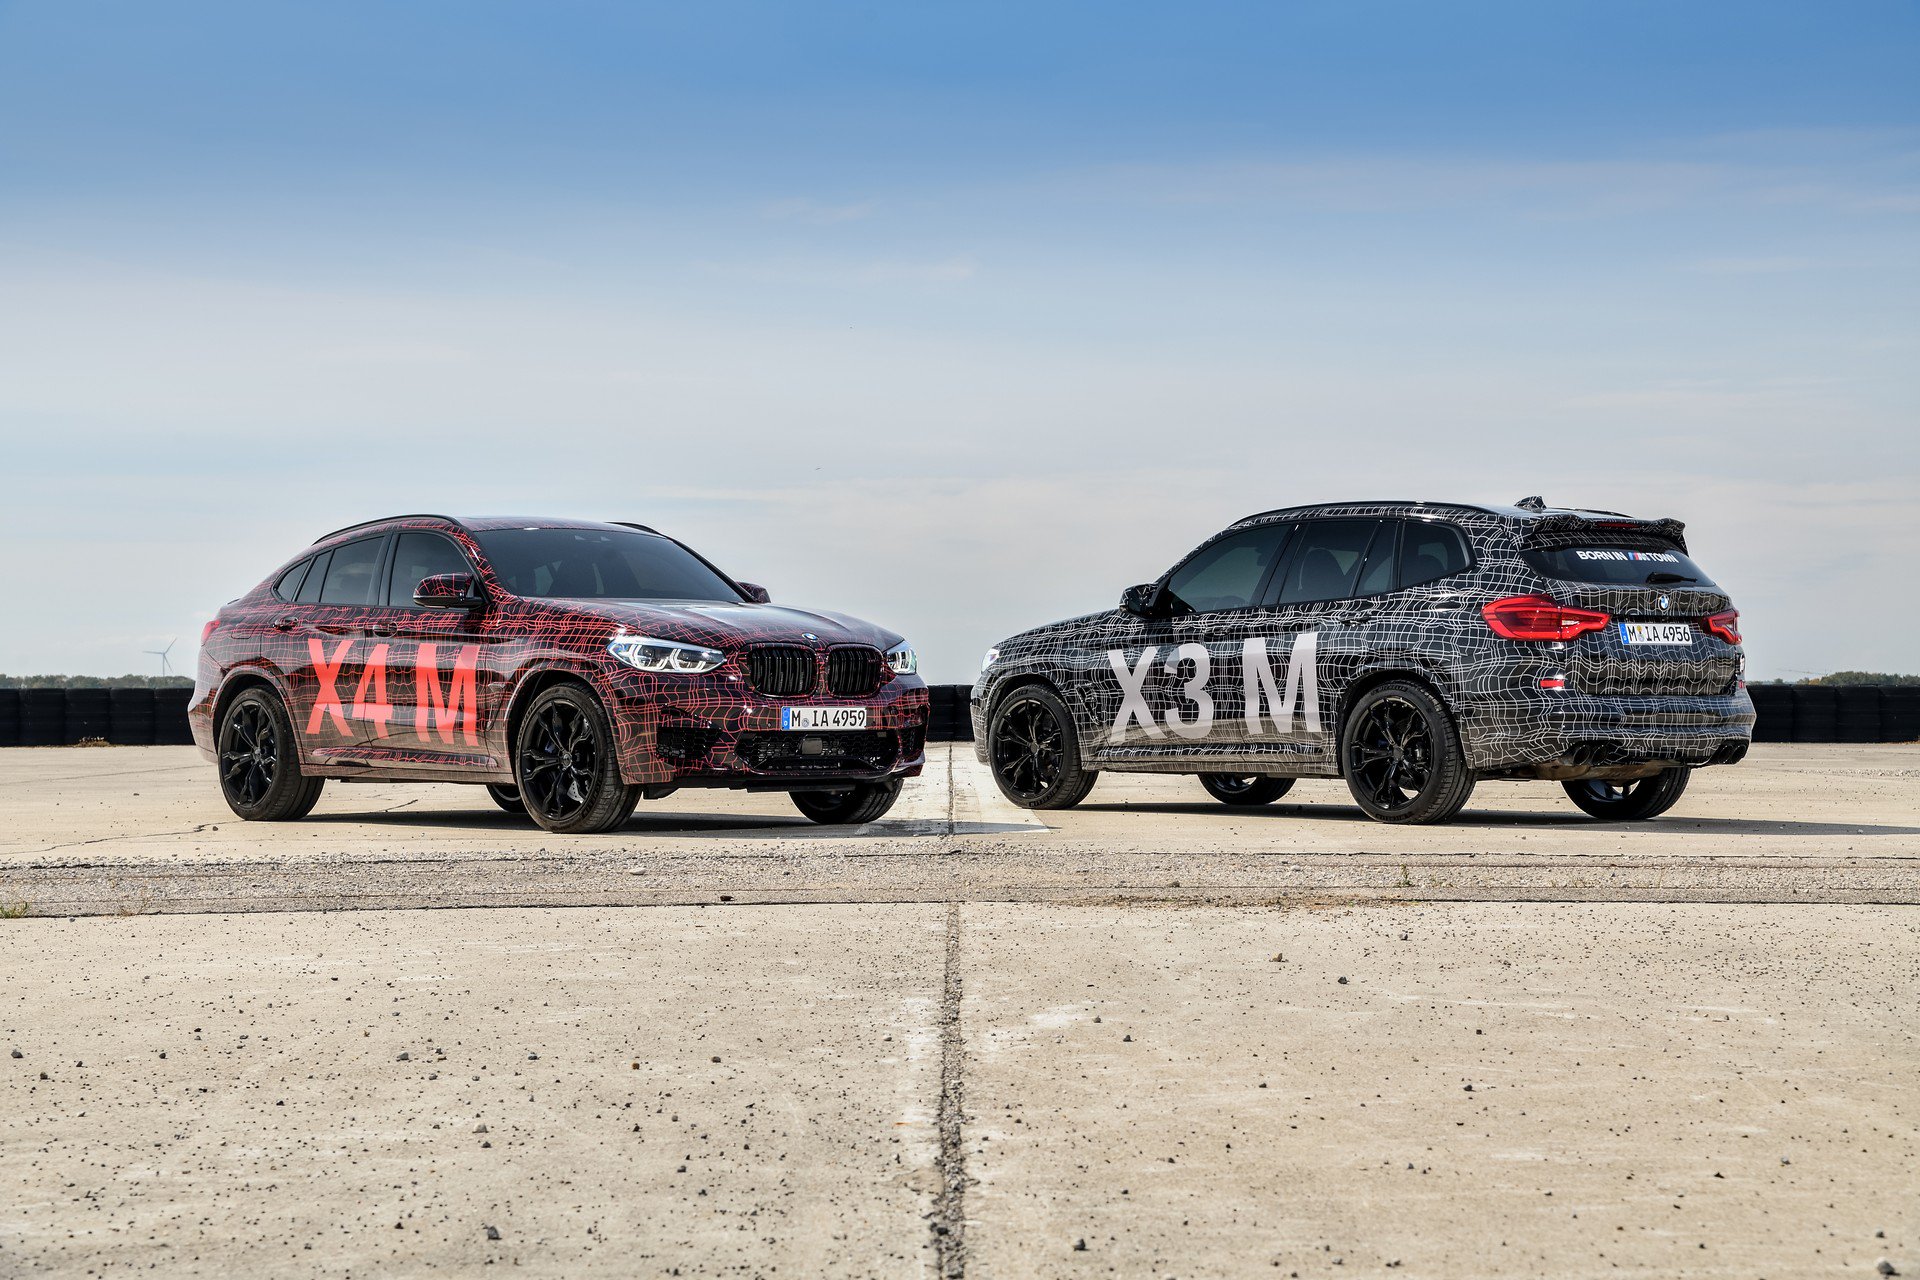 BMW X3 M i BMW X4 M - Rozgrzewka na Nürburgringu